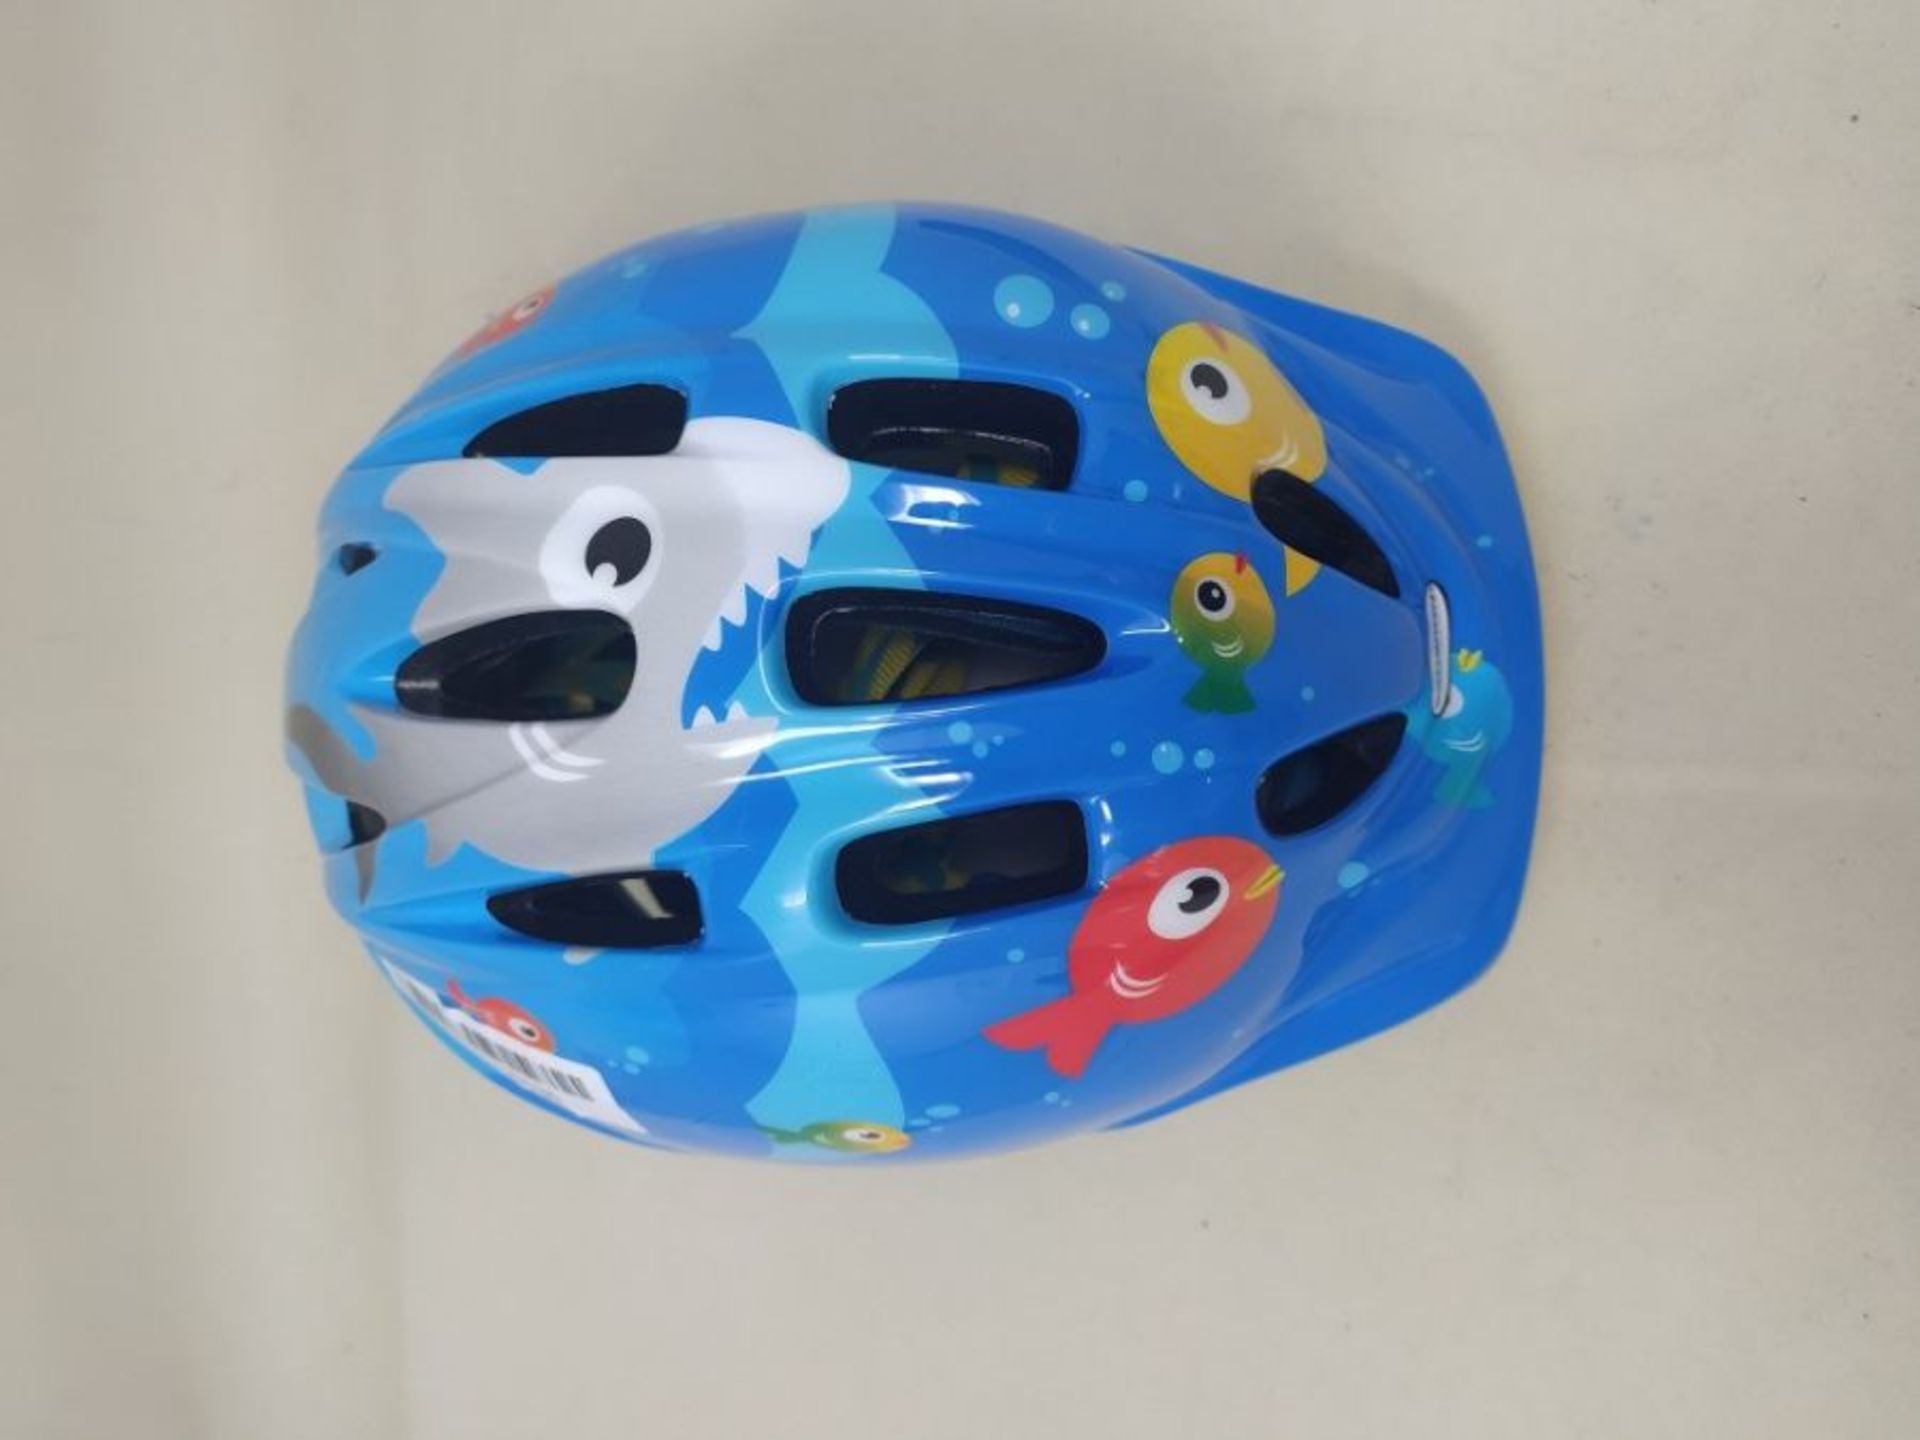 Schwinn Kids Character Bike Helmet, Toddler, 3-5 Years Old, 48-52 cm, Dial Fit Adjusta - Image 2 of 2